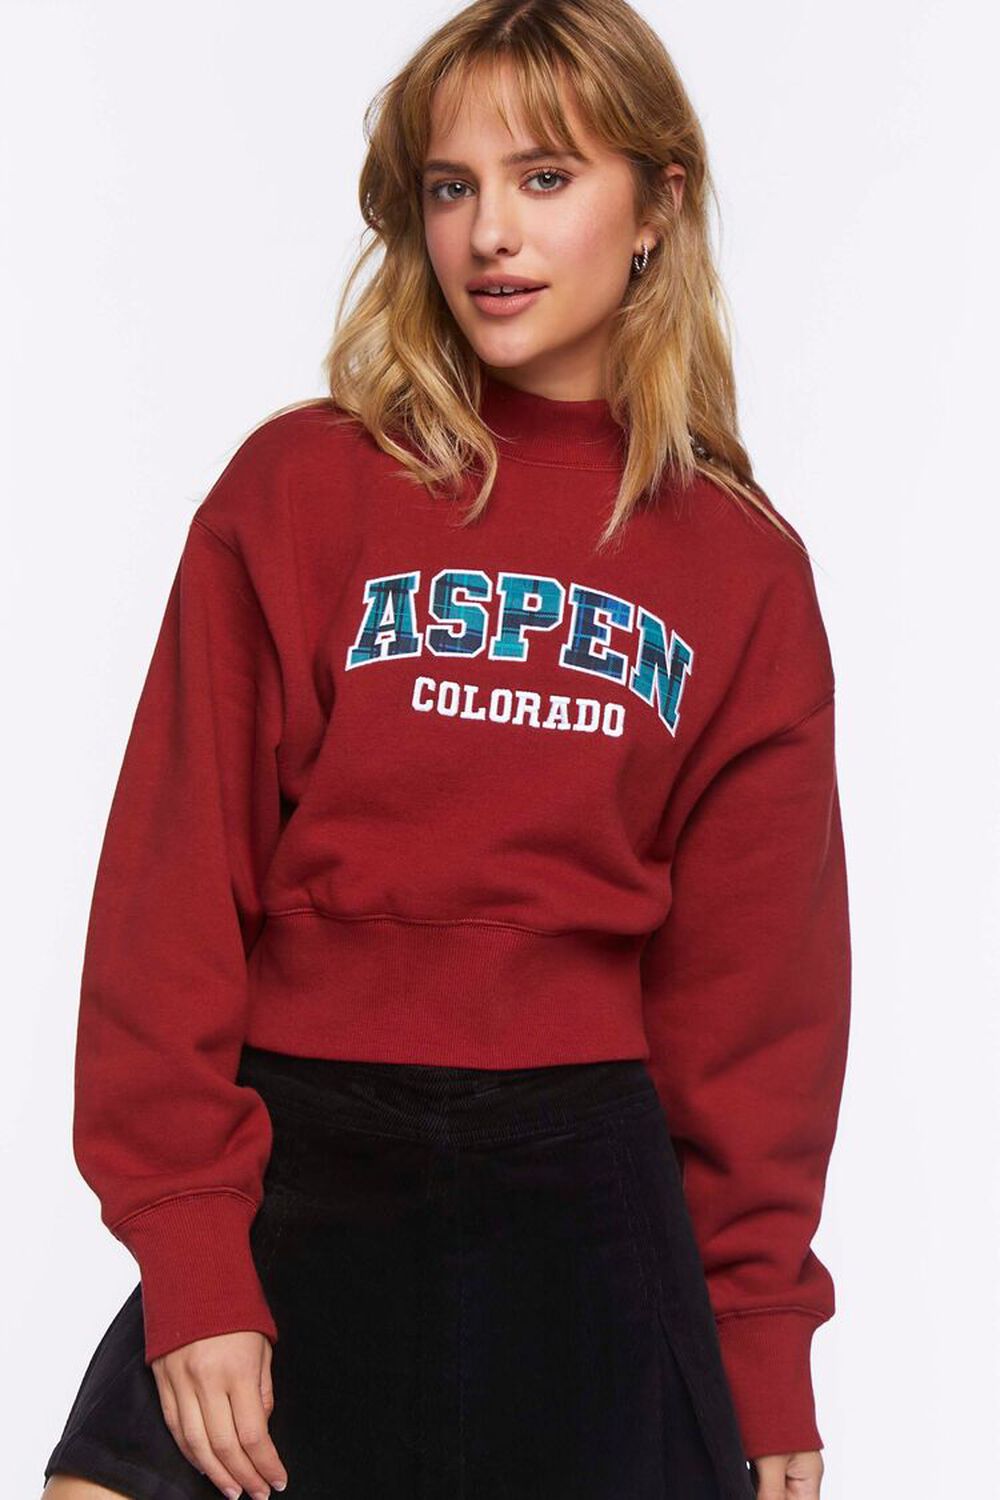 Aspen Colorado Fleece Pullover